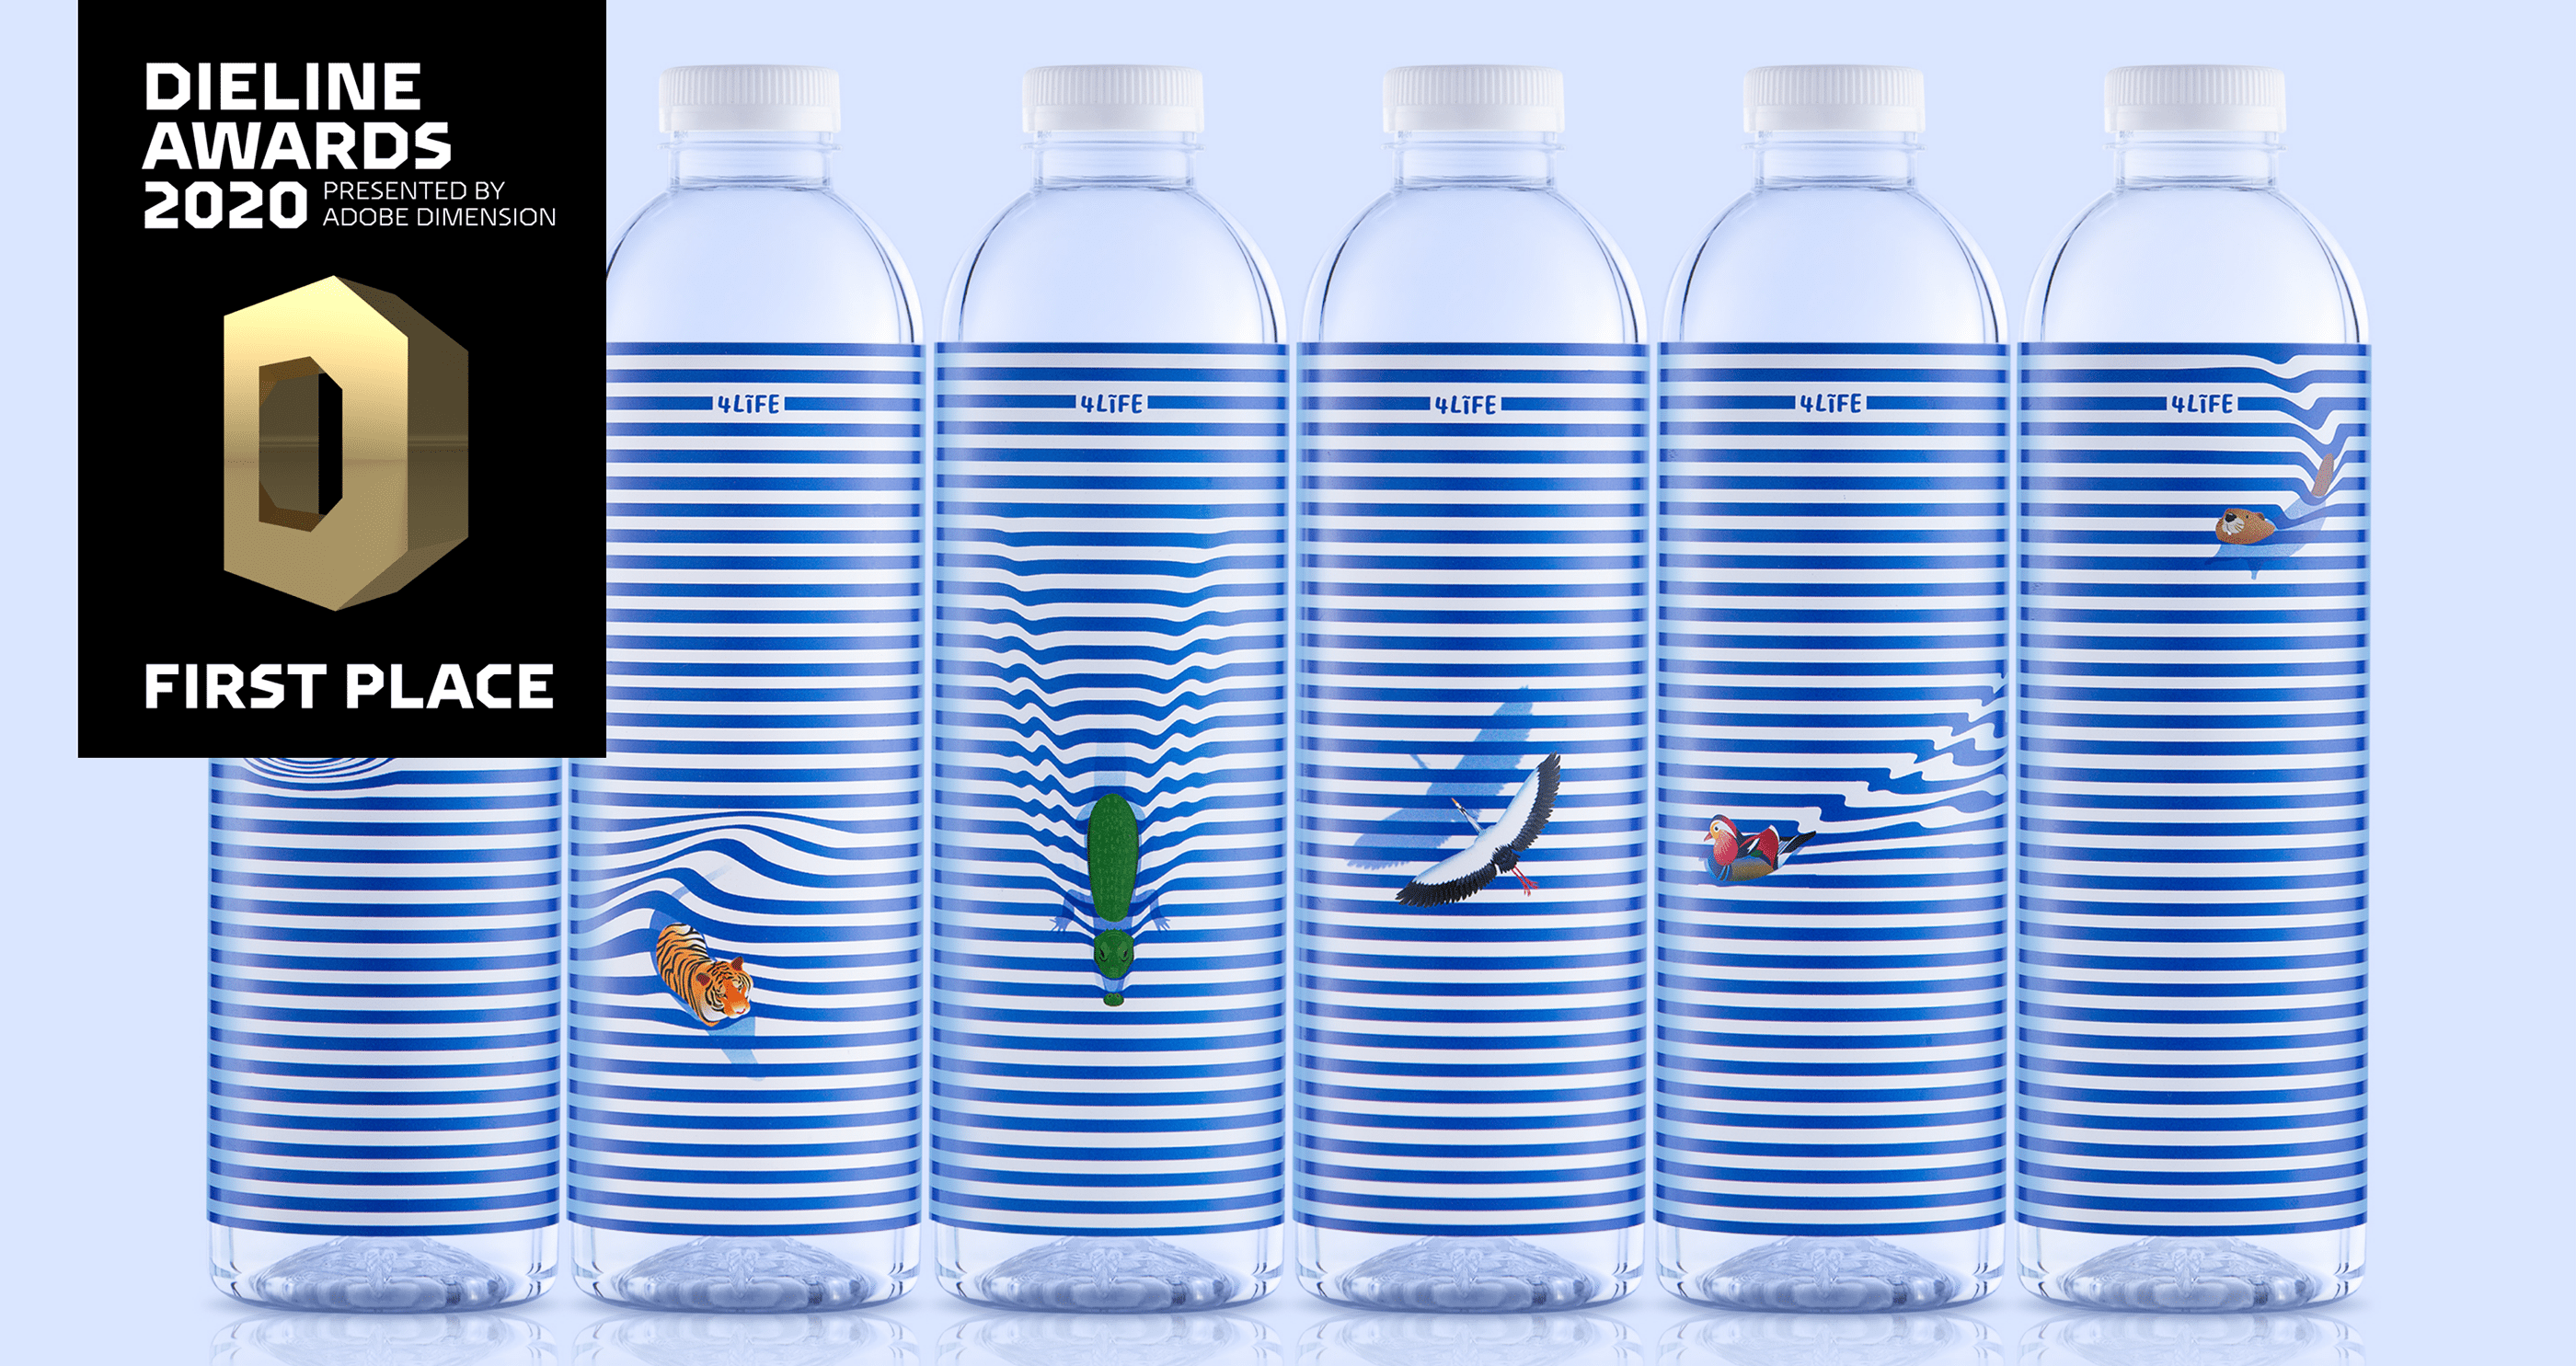 创意矿泉水包装设计 包装水包装设计公司 矿泉水包装设计图片案例 第1张